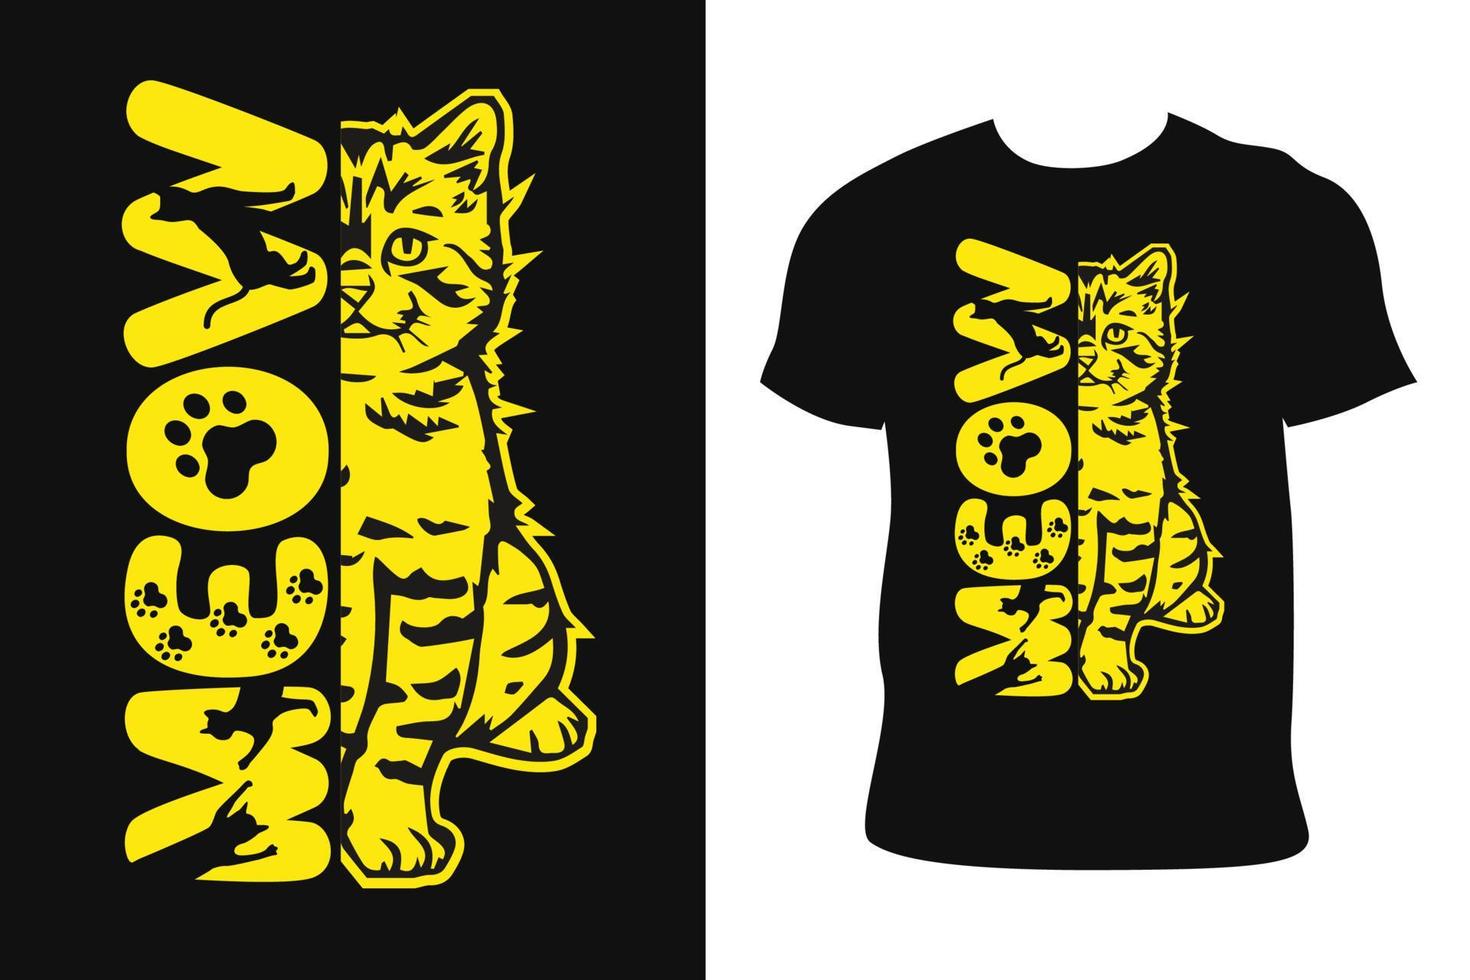 conception de t-shirt de chat. tee shirt chat. chat t-shirt vecteur gratuit.